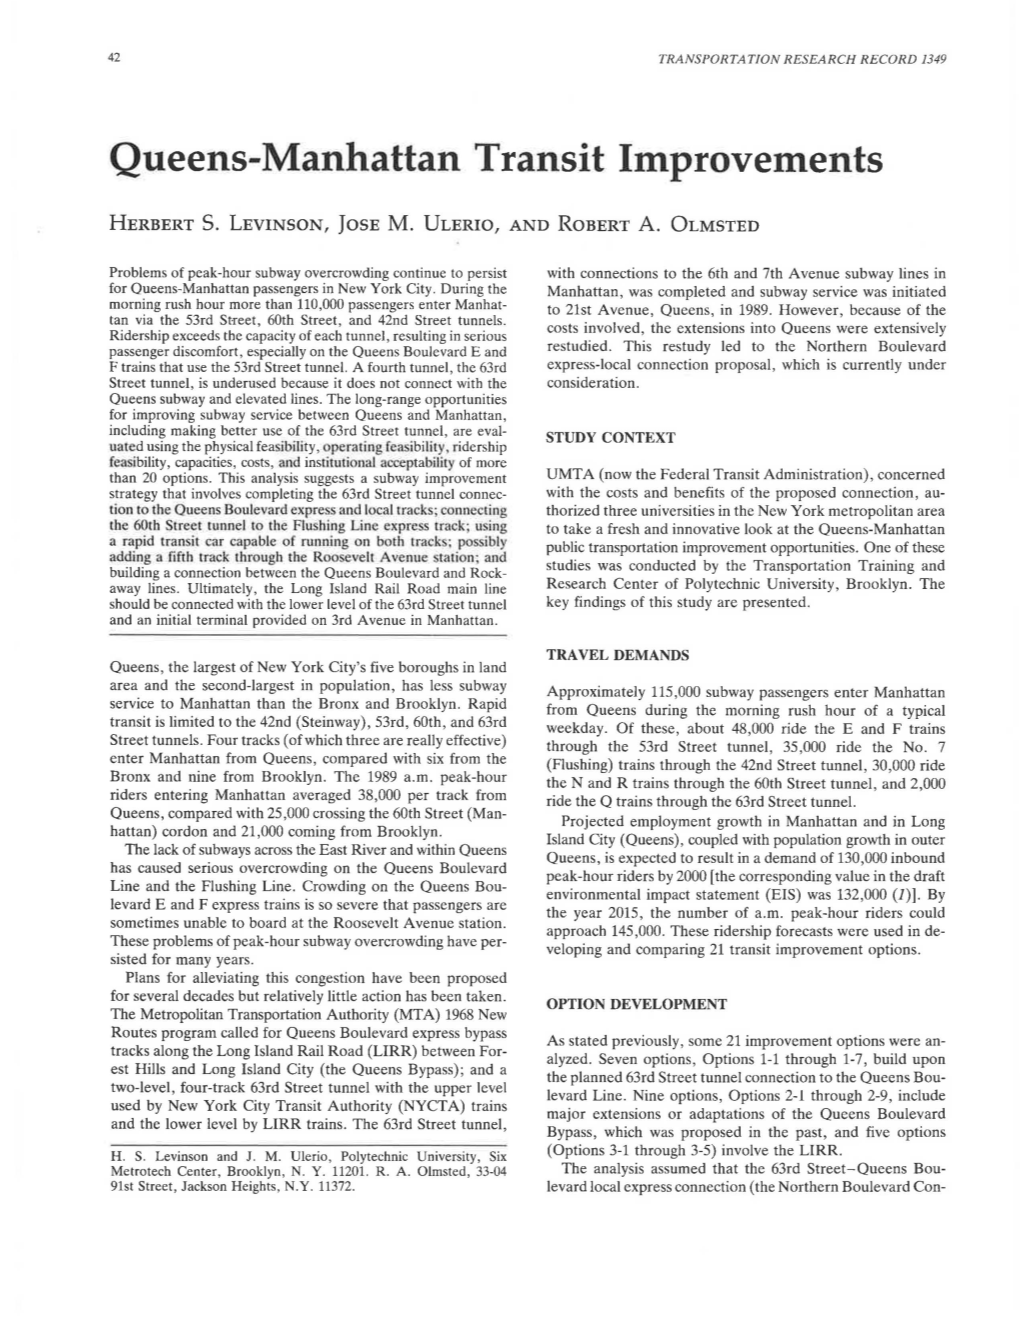 Queens-Manhattan Transit Improvements